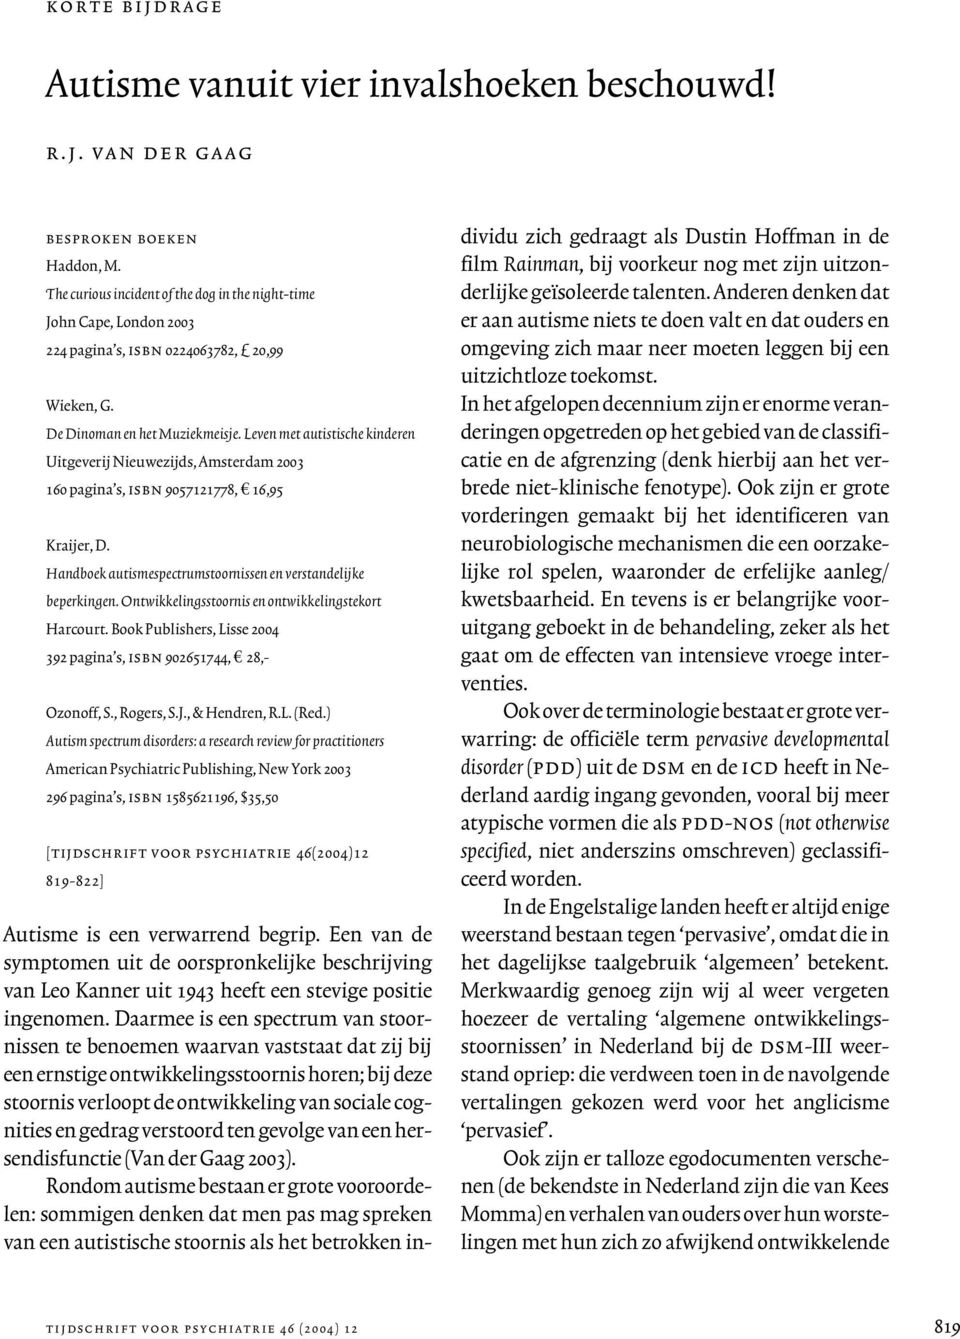 Leven met autistische kinderen Uitgeverij Nieuwezijds, Amsterdam 2003 160 pagina s, isbn 9057121778, 16,95 Kraijer, D. Handboek autismespectrumstoornissen en verstandelijke beperkingen.